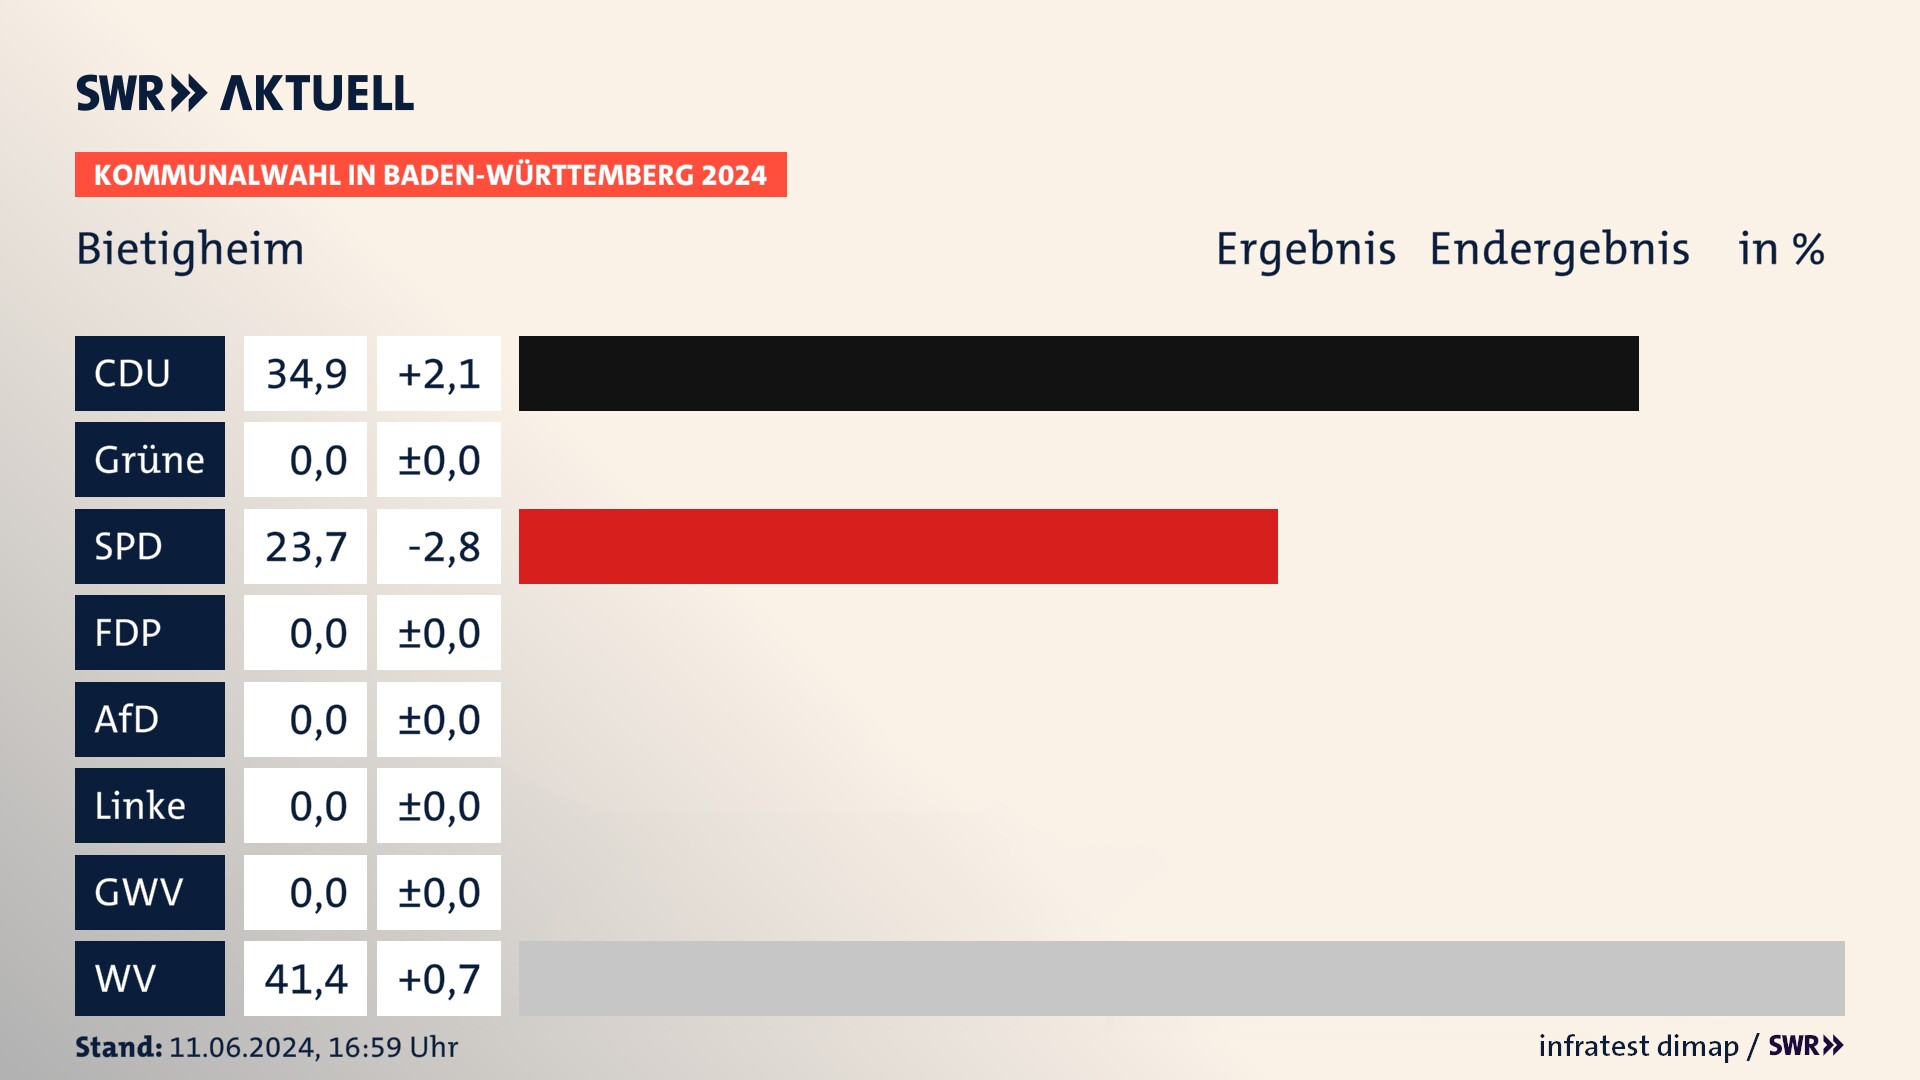 Kommunalwahl 2024 Endergebnis Zweitstimme für Bietigheim. In Bietigheim erzielt die CDU 34,9 Prozent der gültigen  Stimmen. Die SPD landet bei 23,7 Prozent. Die Wählervereinigungen erreichen 41,4 Prozent.